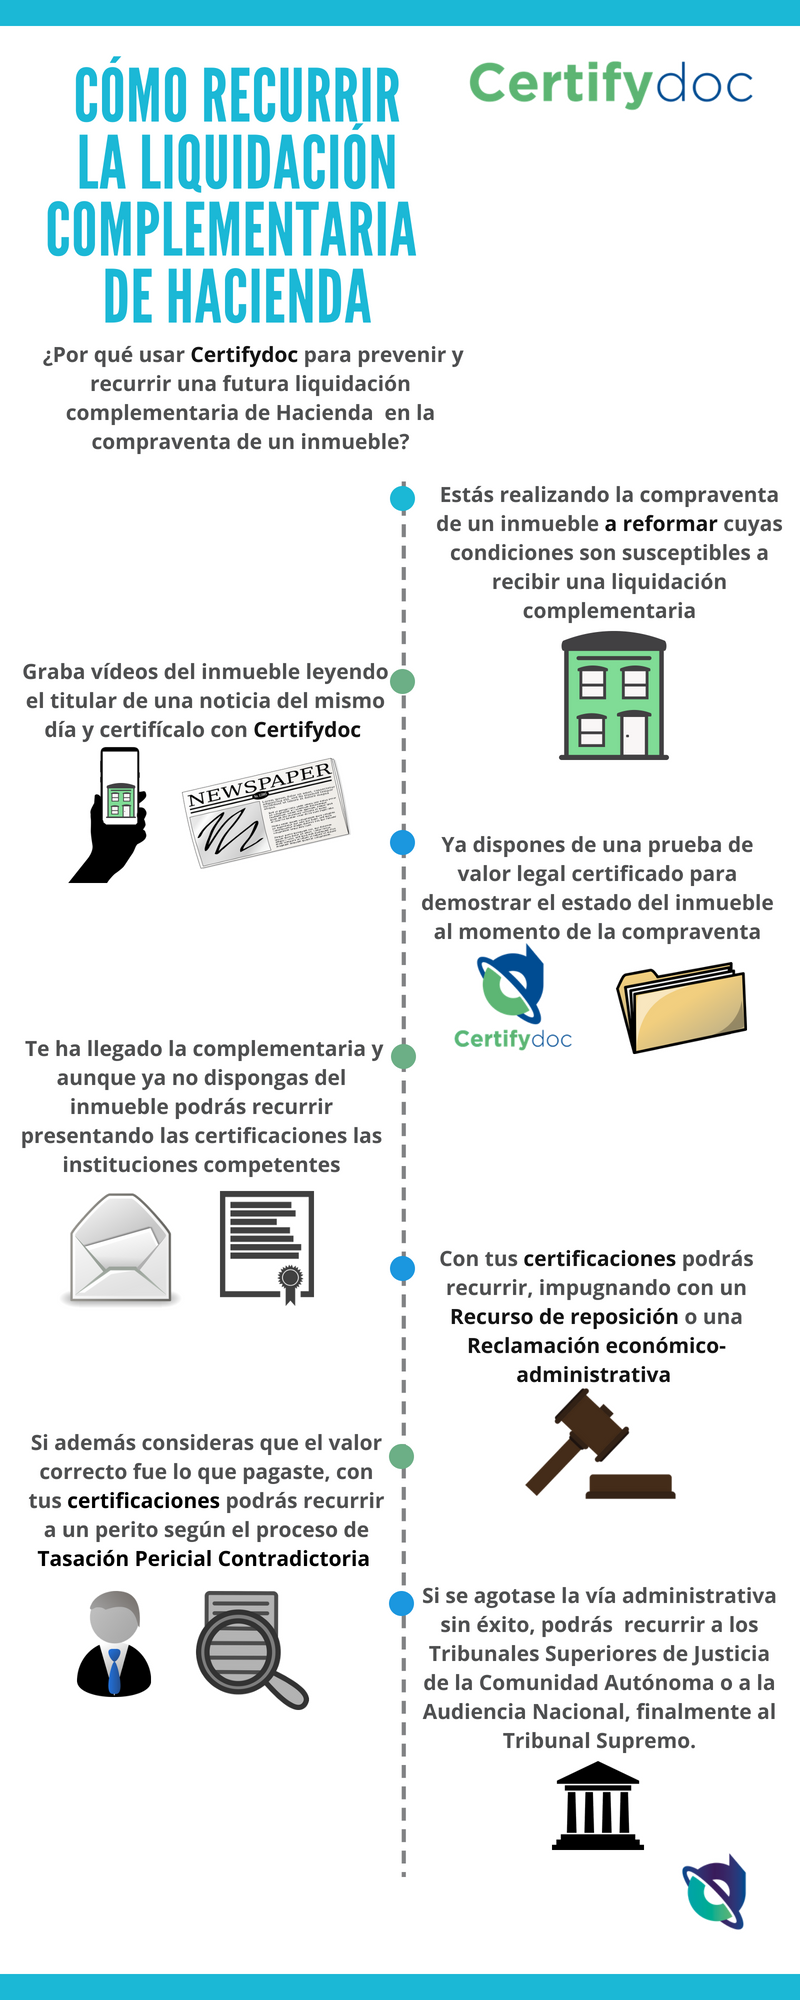 Certifydoc-Cómo recurrir la liquidación complementaria de hacienda